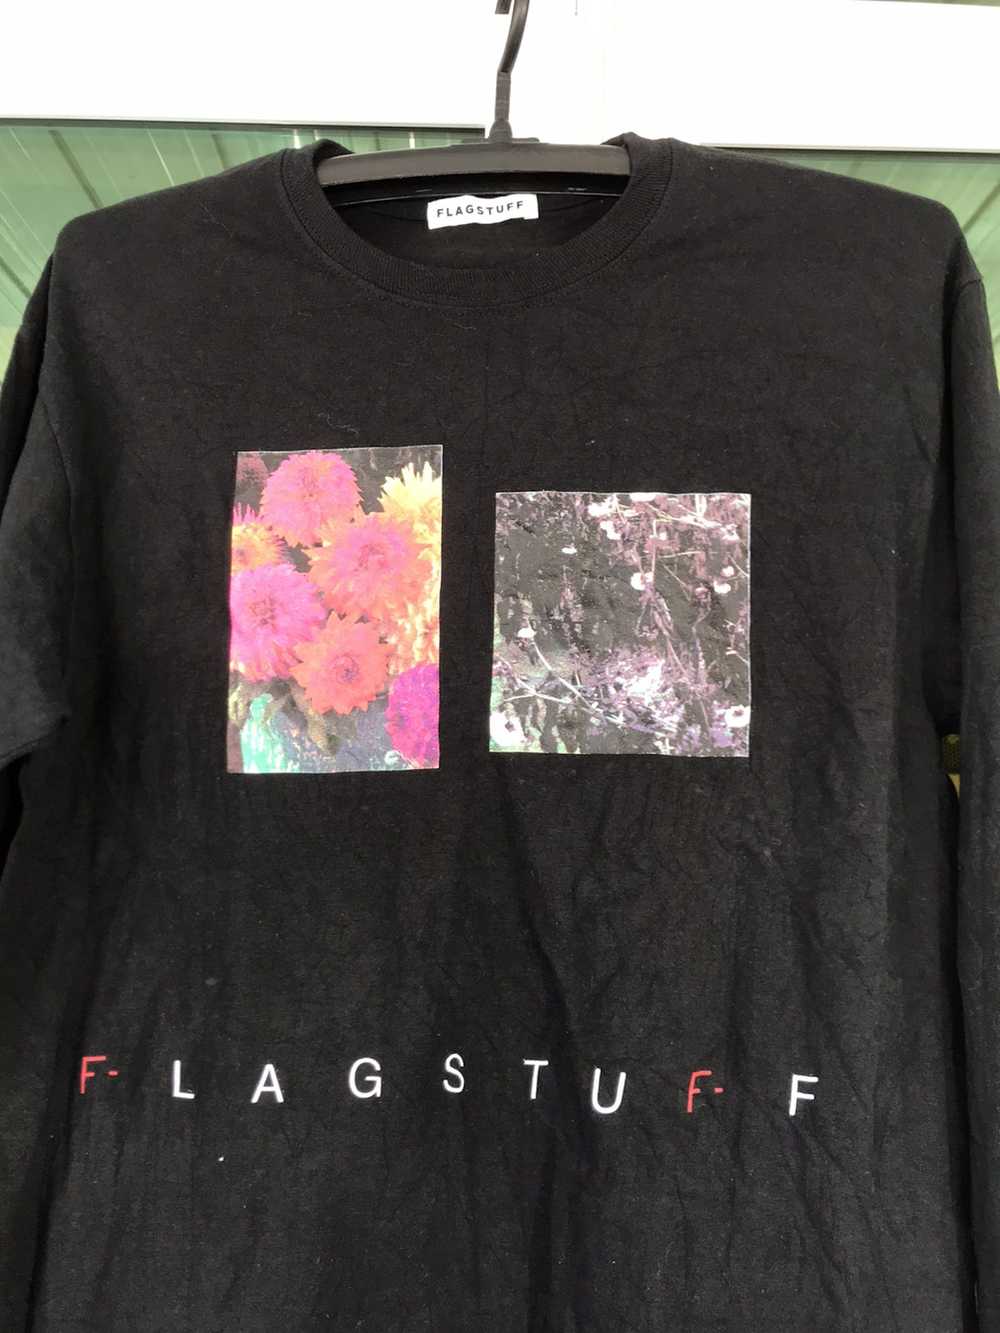 Flagstuff t-shirt - Gem